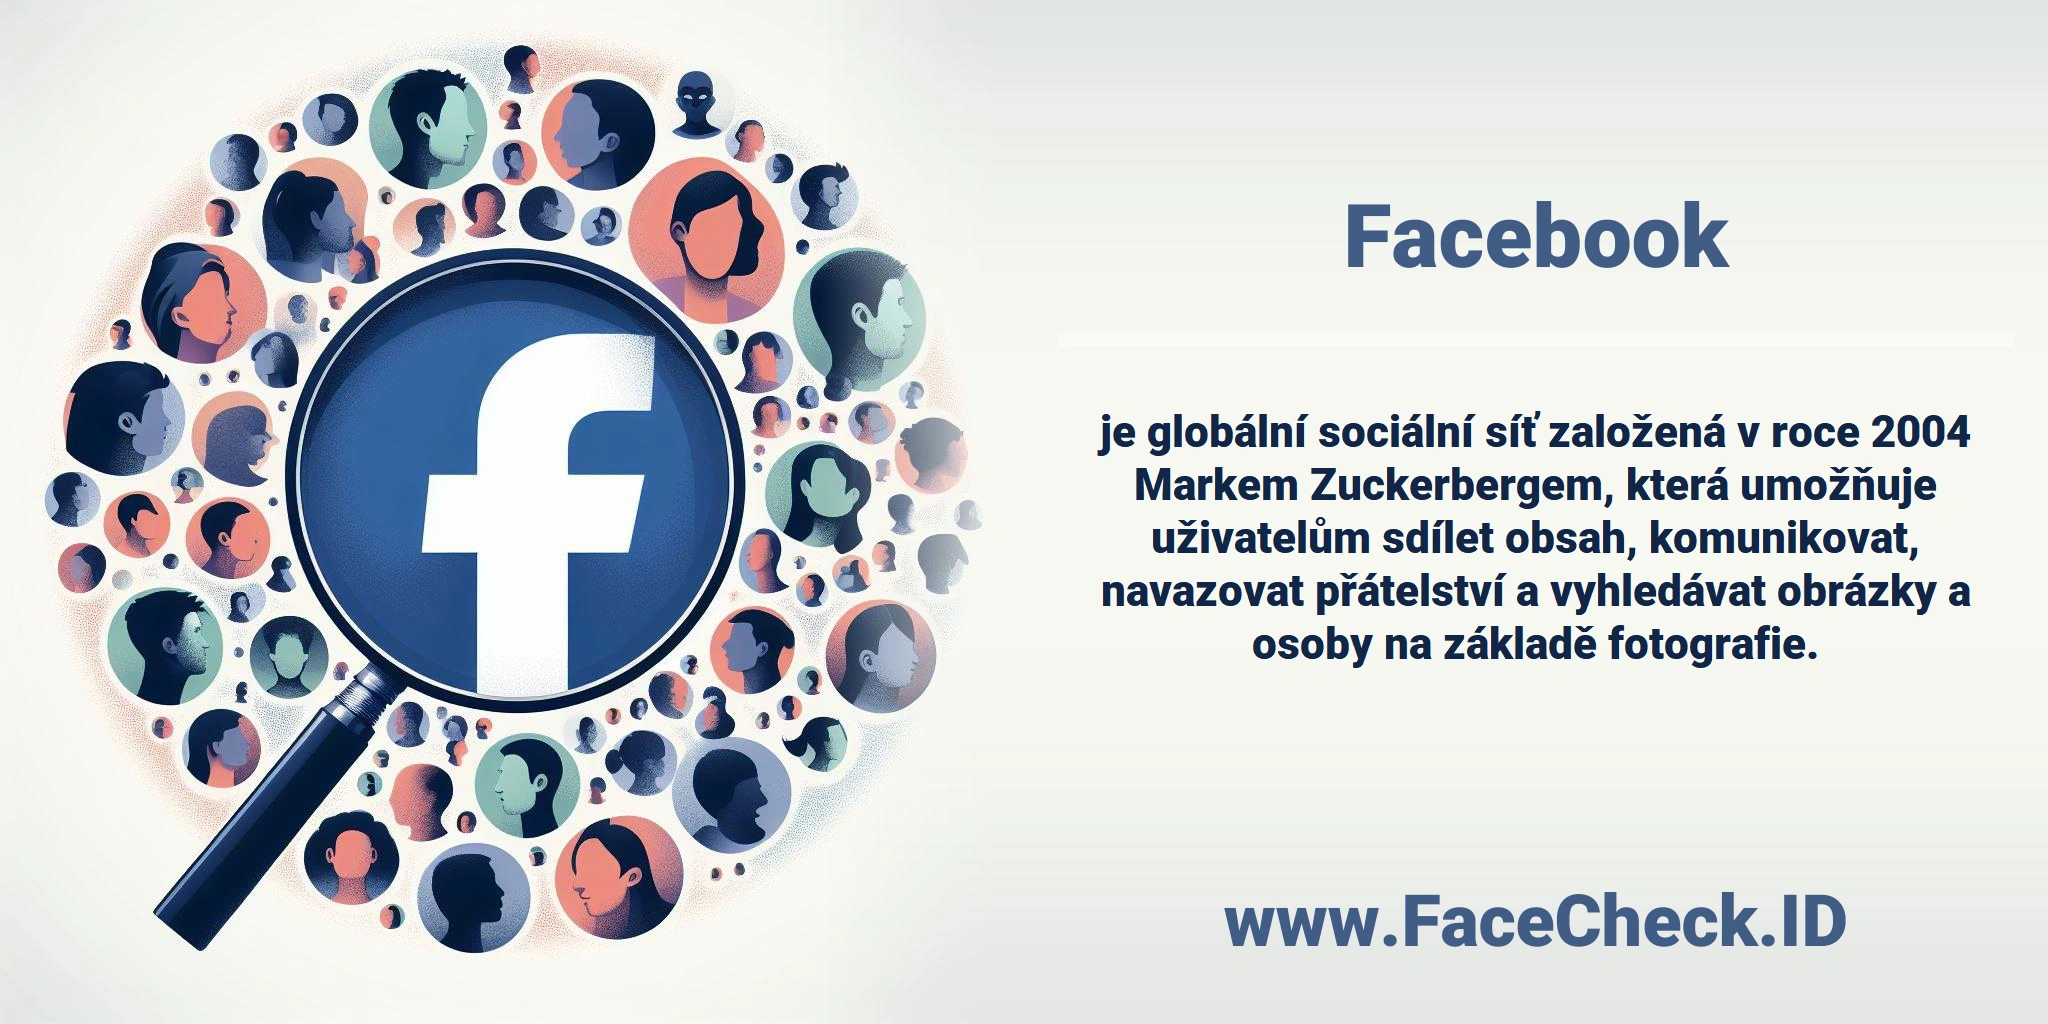 <b>Facebook</b> je globální sociální síť založená v roce 2004 Markem Zuckerbergem, která umožňuje uživatelům sdílet obsah, komunikovat, navazovat přátelství a vyhledávat obrázky a osoby na základě fotografie.